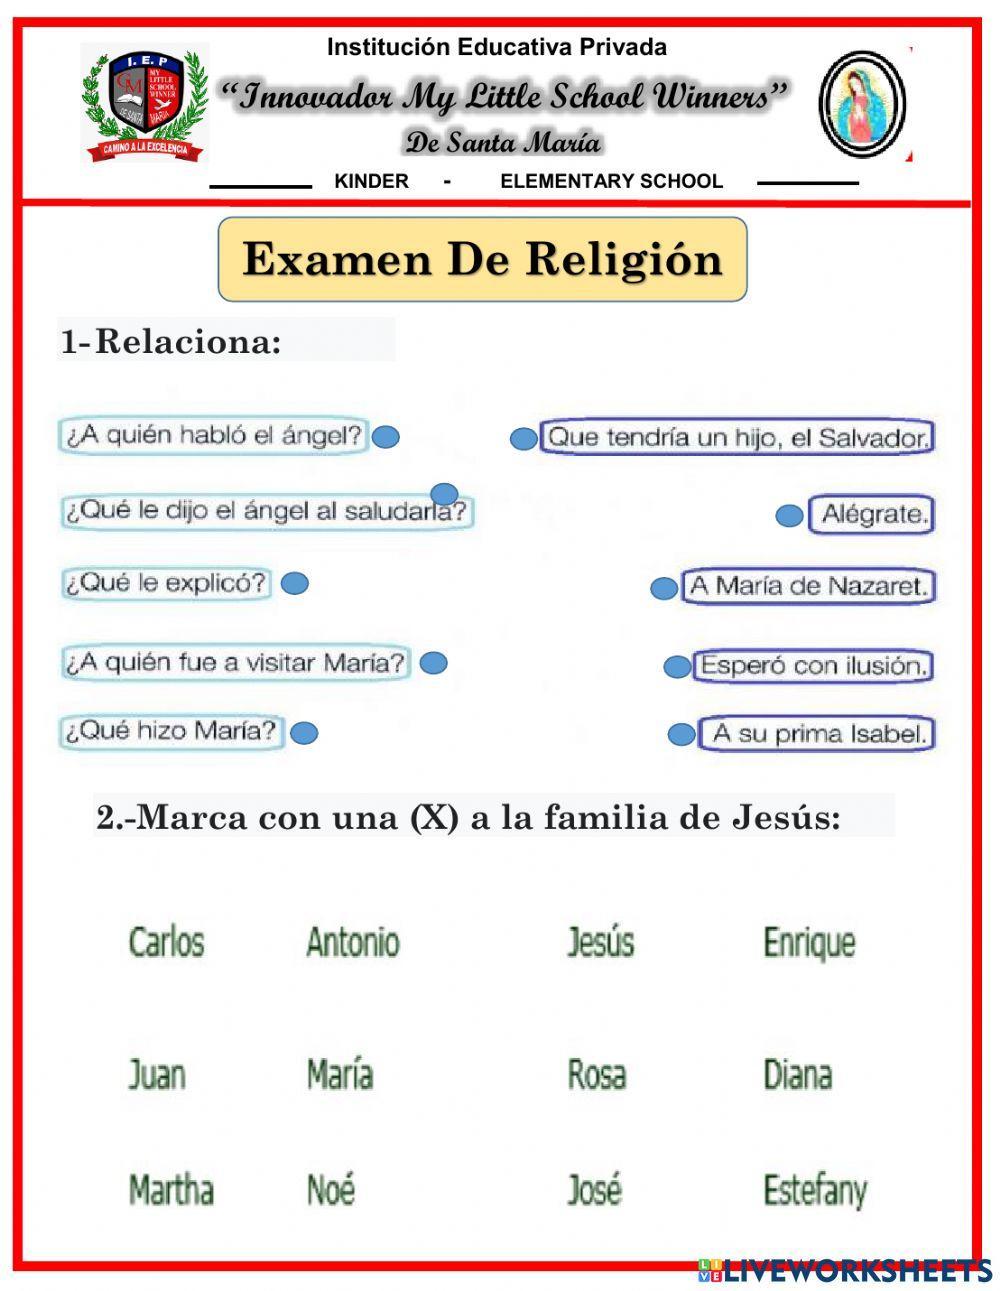 Examen de Religión